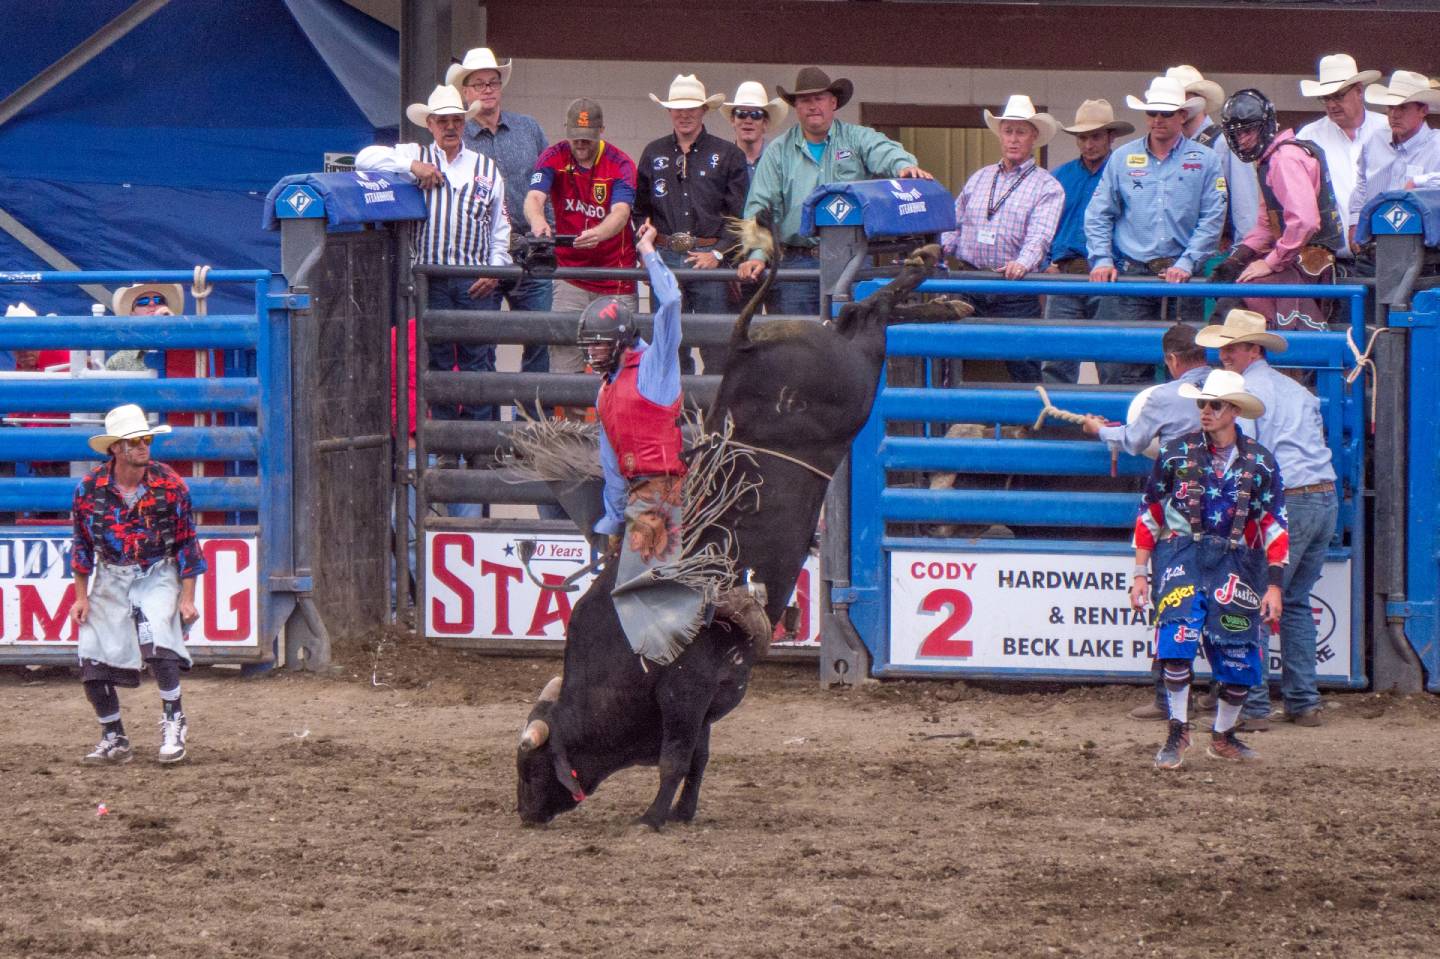 A bullrider at the Cody Nite Rodeo